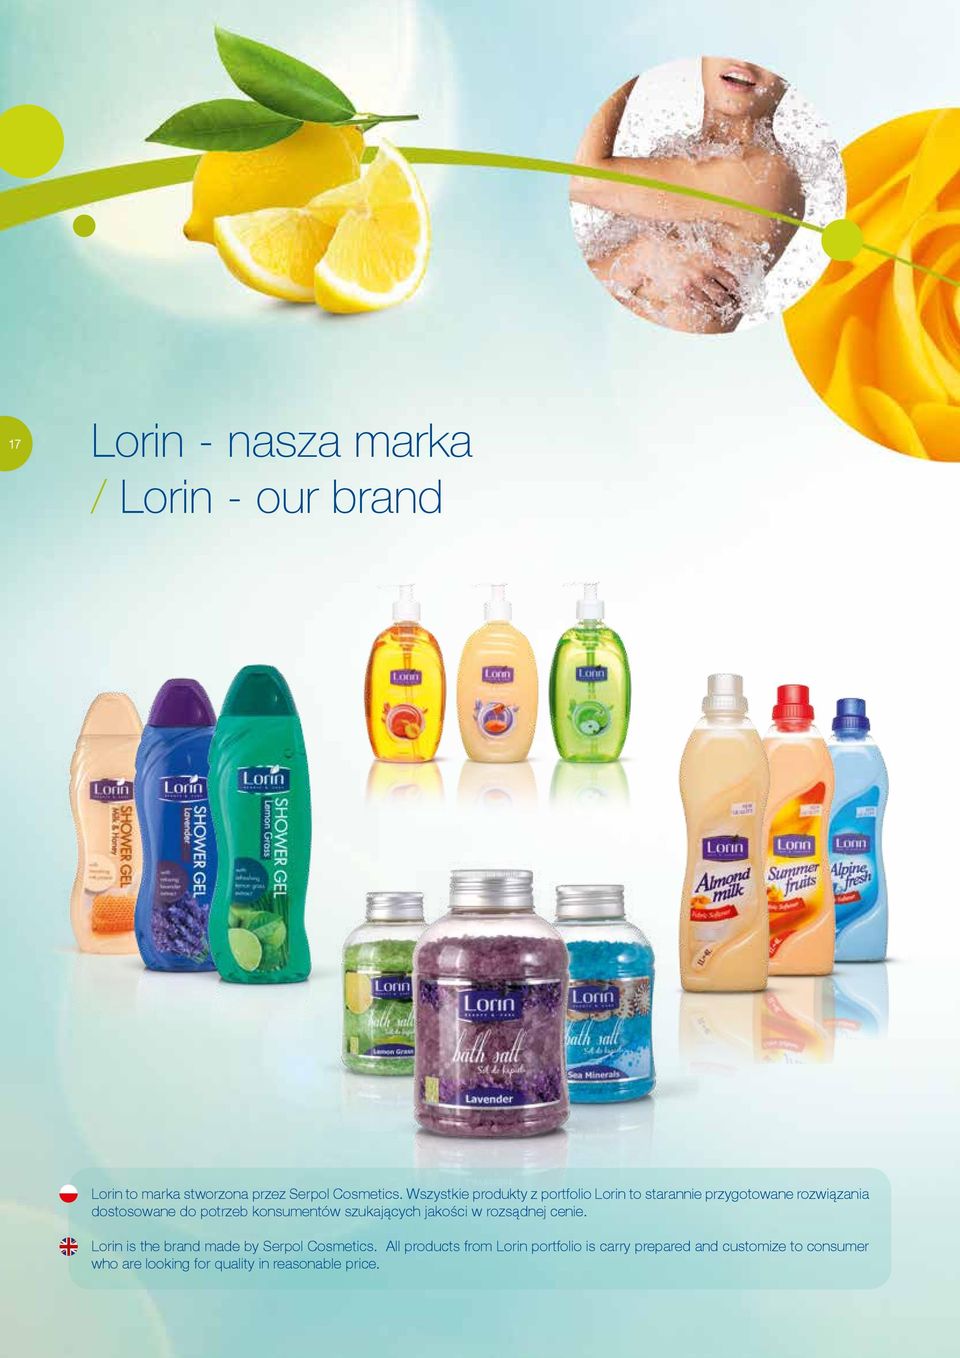 konsumentów szukających jakości w rozsądnej cenie. Lorin is the brand made by Serpol Cosmetics.